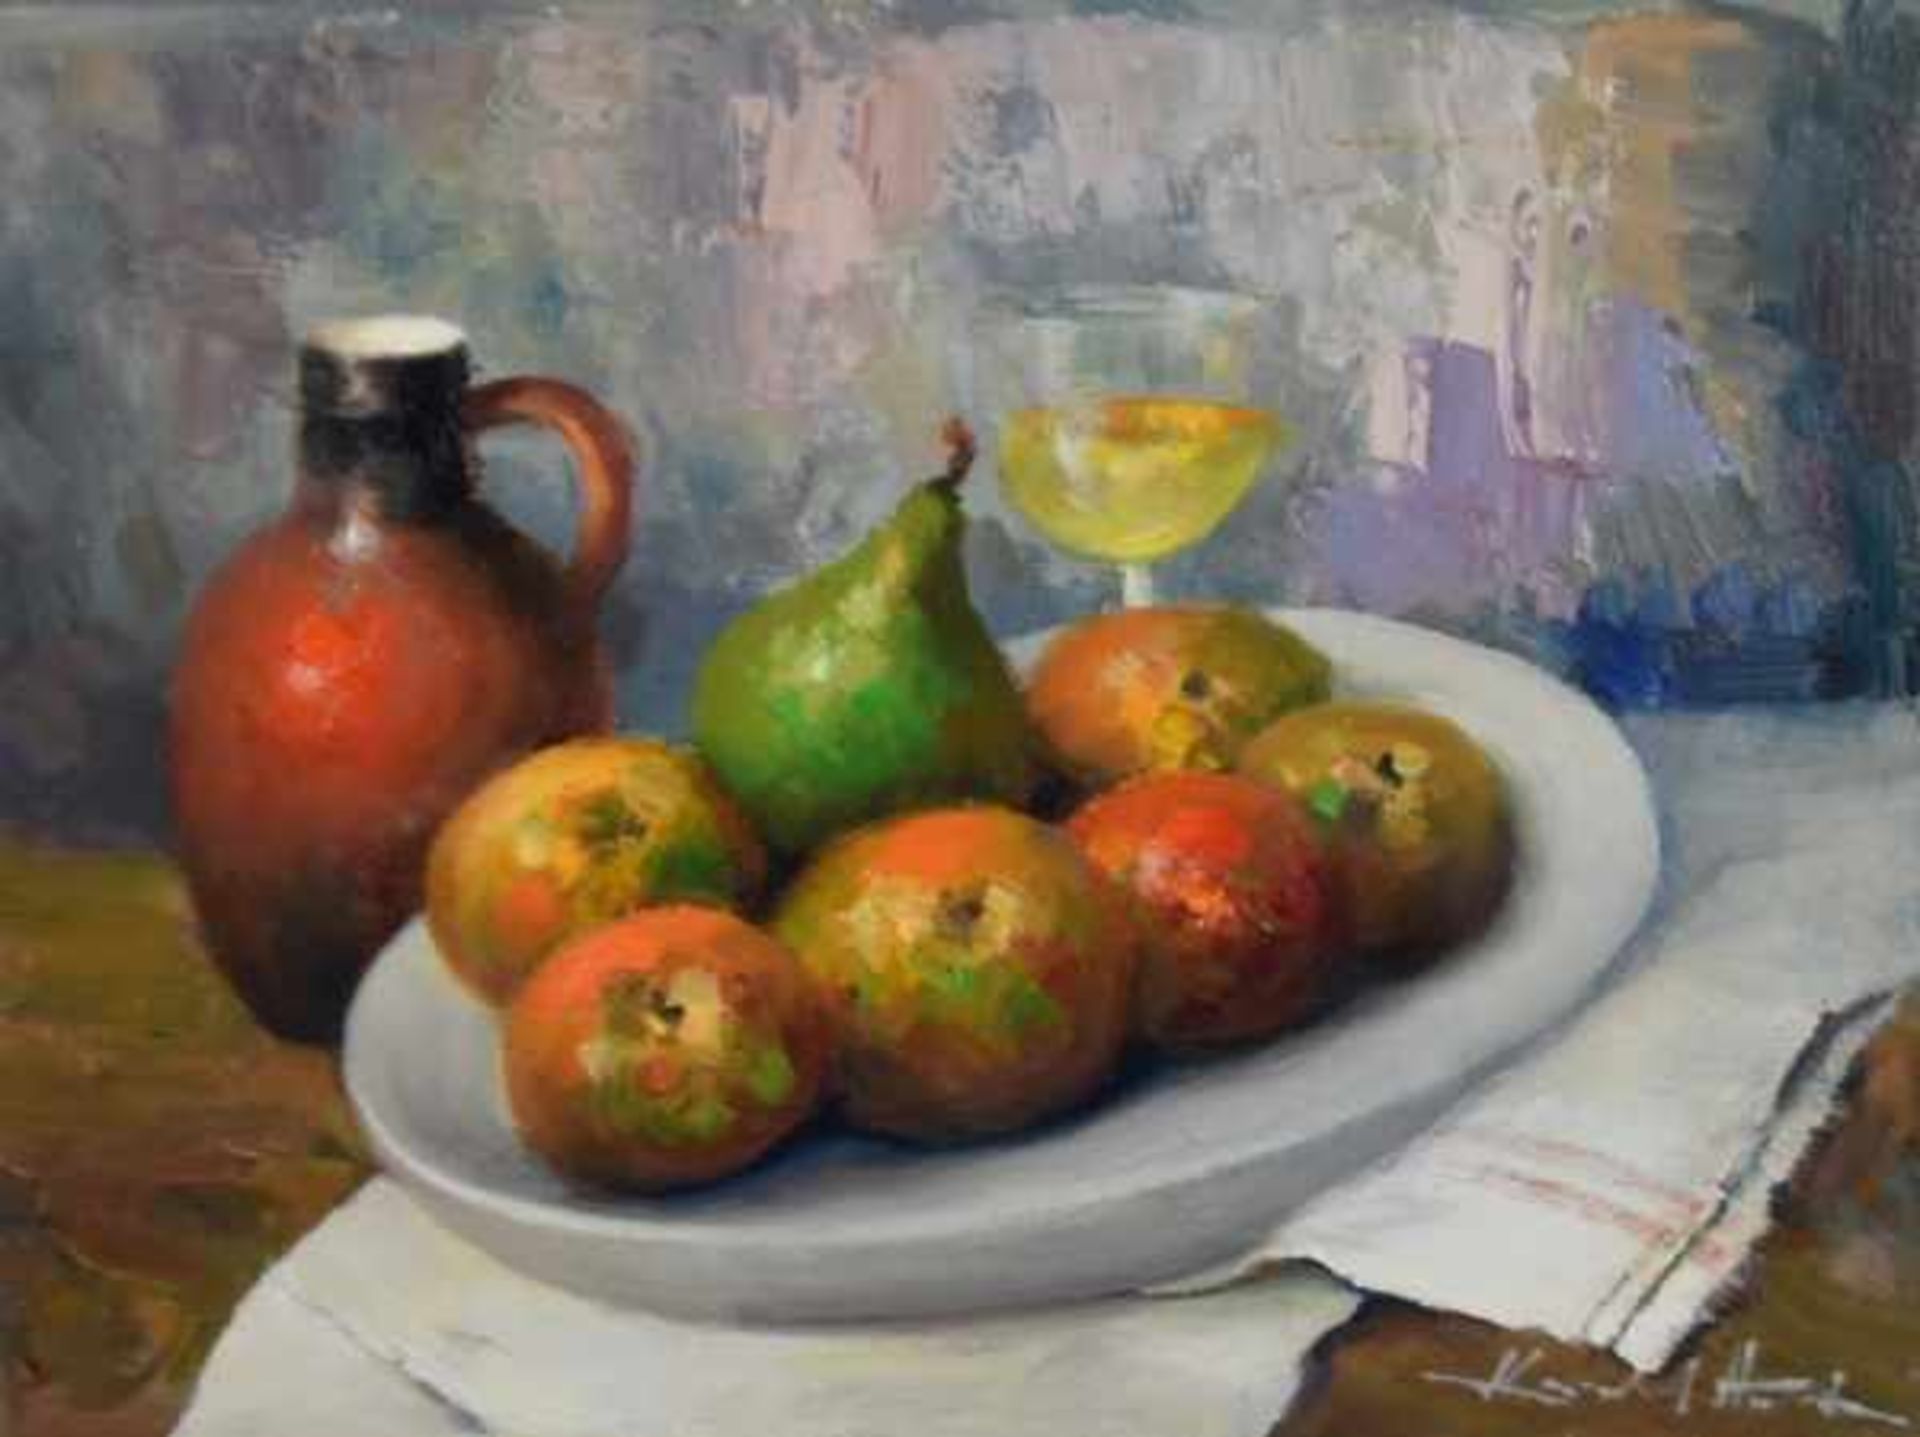 HODR Karel (1910 Prag - 2002 Konstanz) "Stilleben Äpfel", Äpfel und eine Birne auf weißem Teller mit